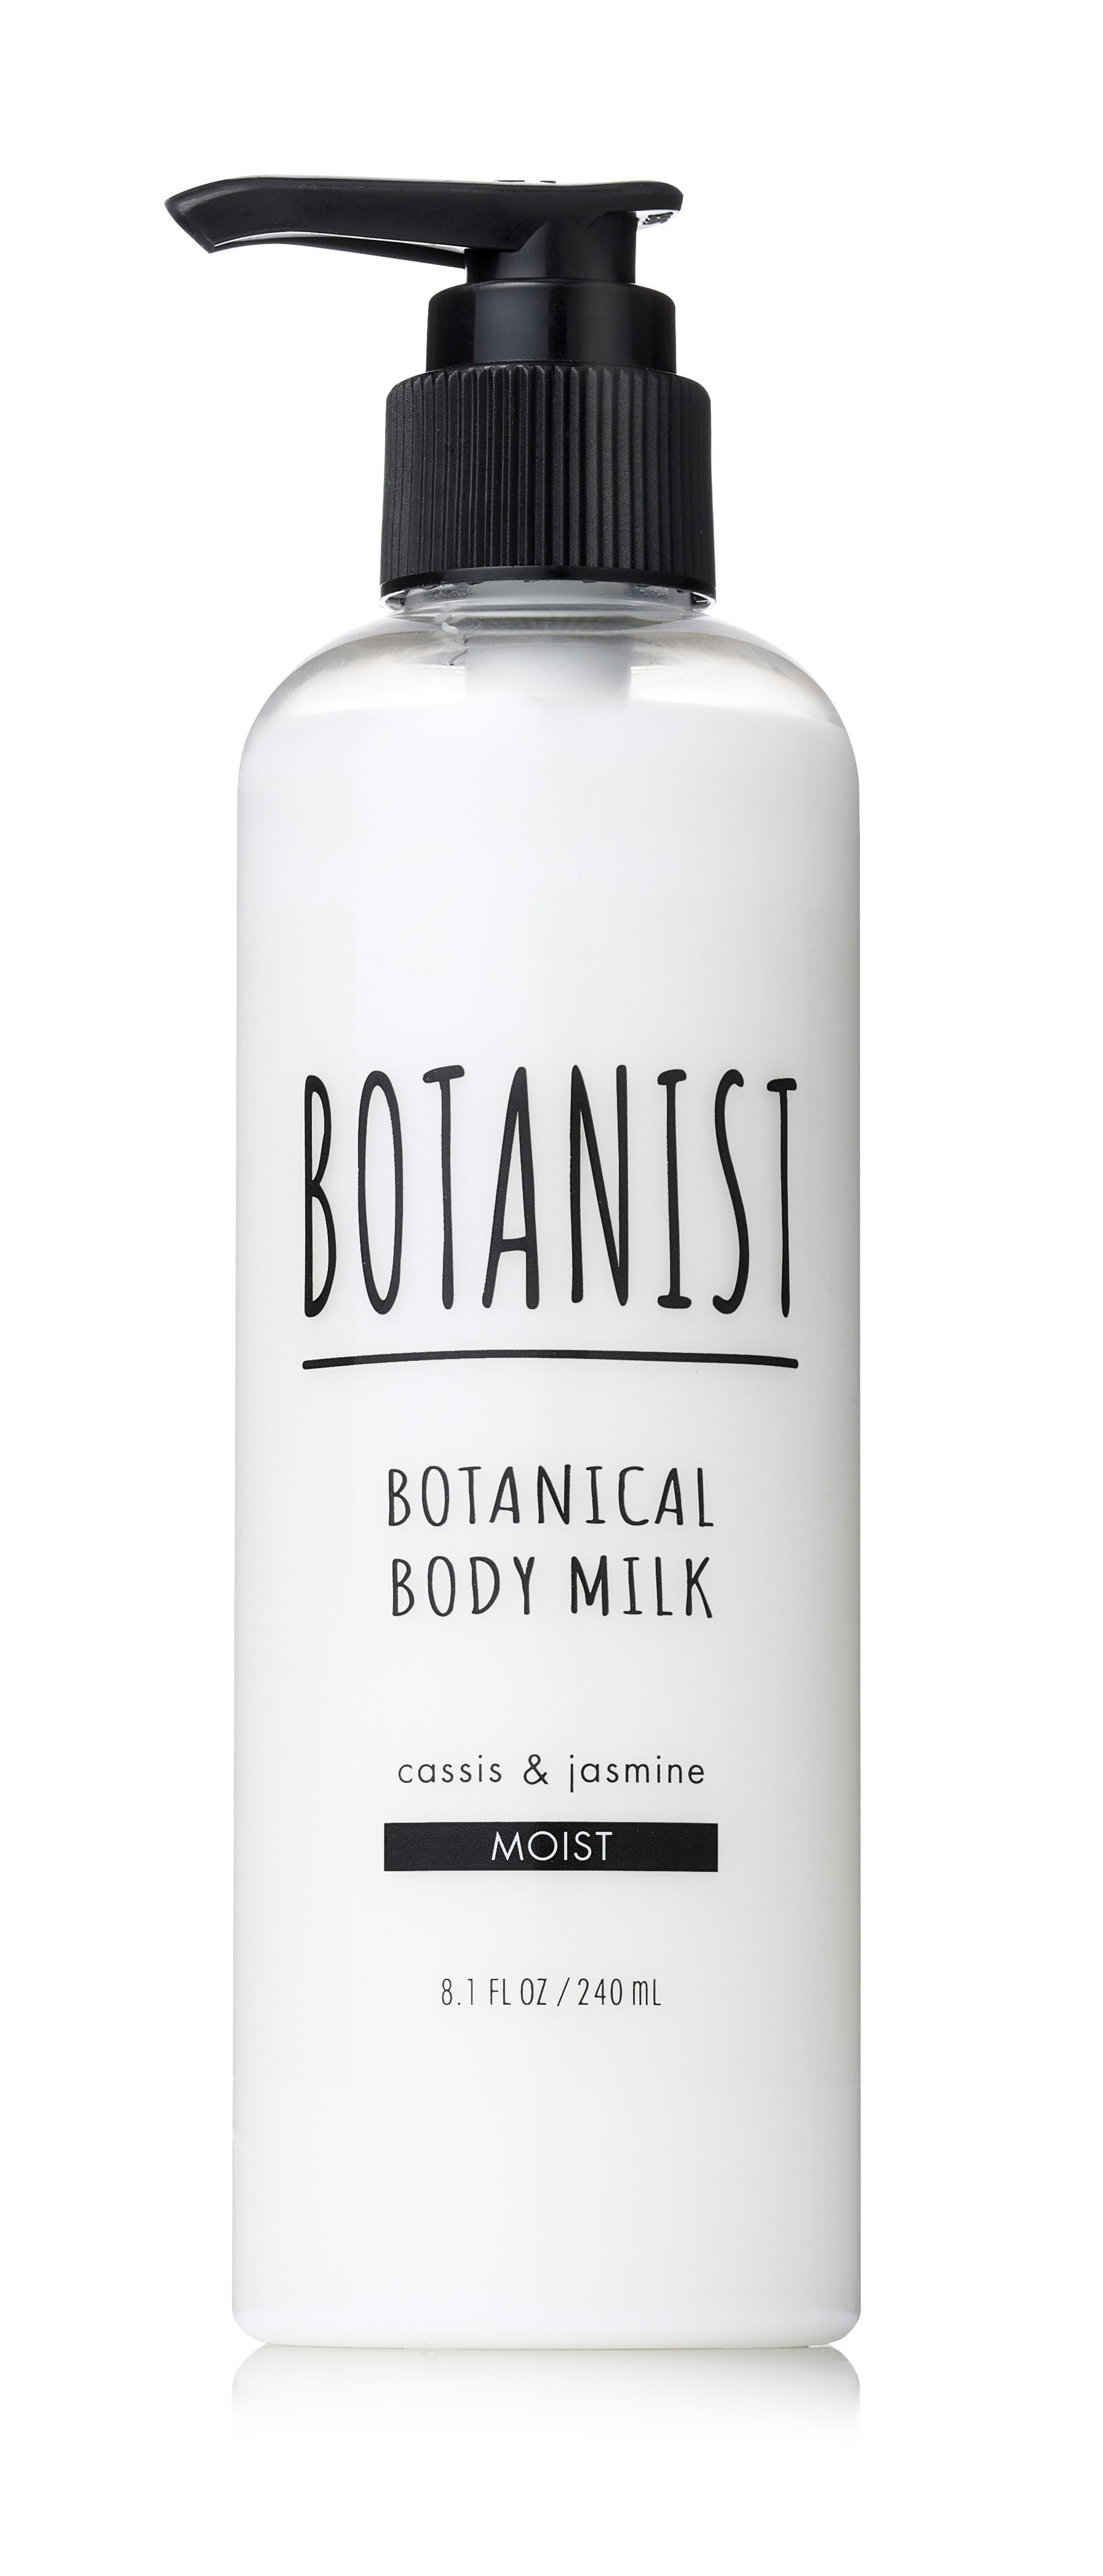 31種の保湿成分配合で潤いヴェール肌に導く、素肌にとろける植物由来の美容液ミルク「ボタニカルボディーミルク ディープモイスト」が9月1日に発売のサブ画像8